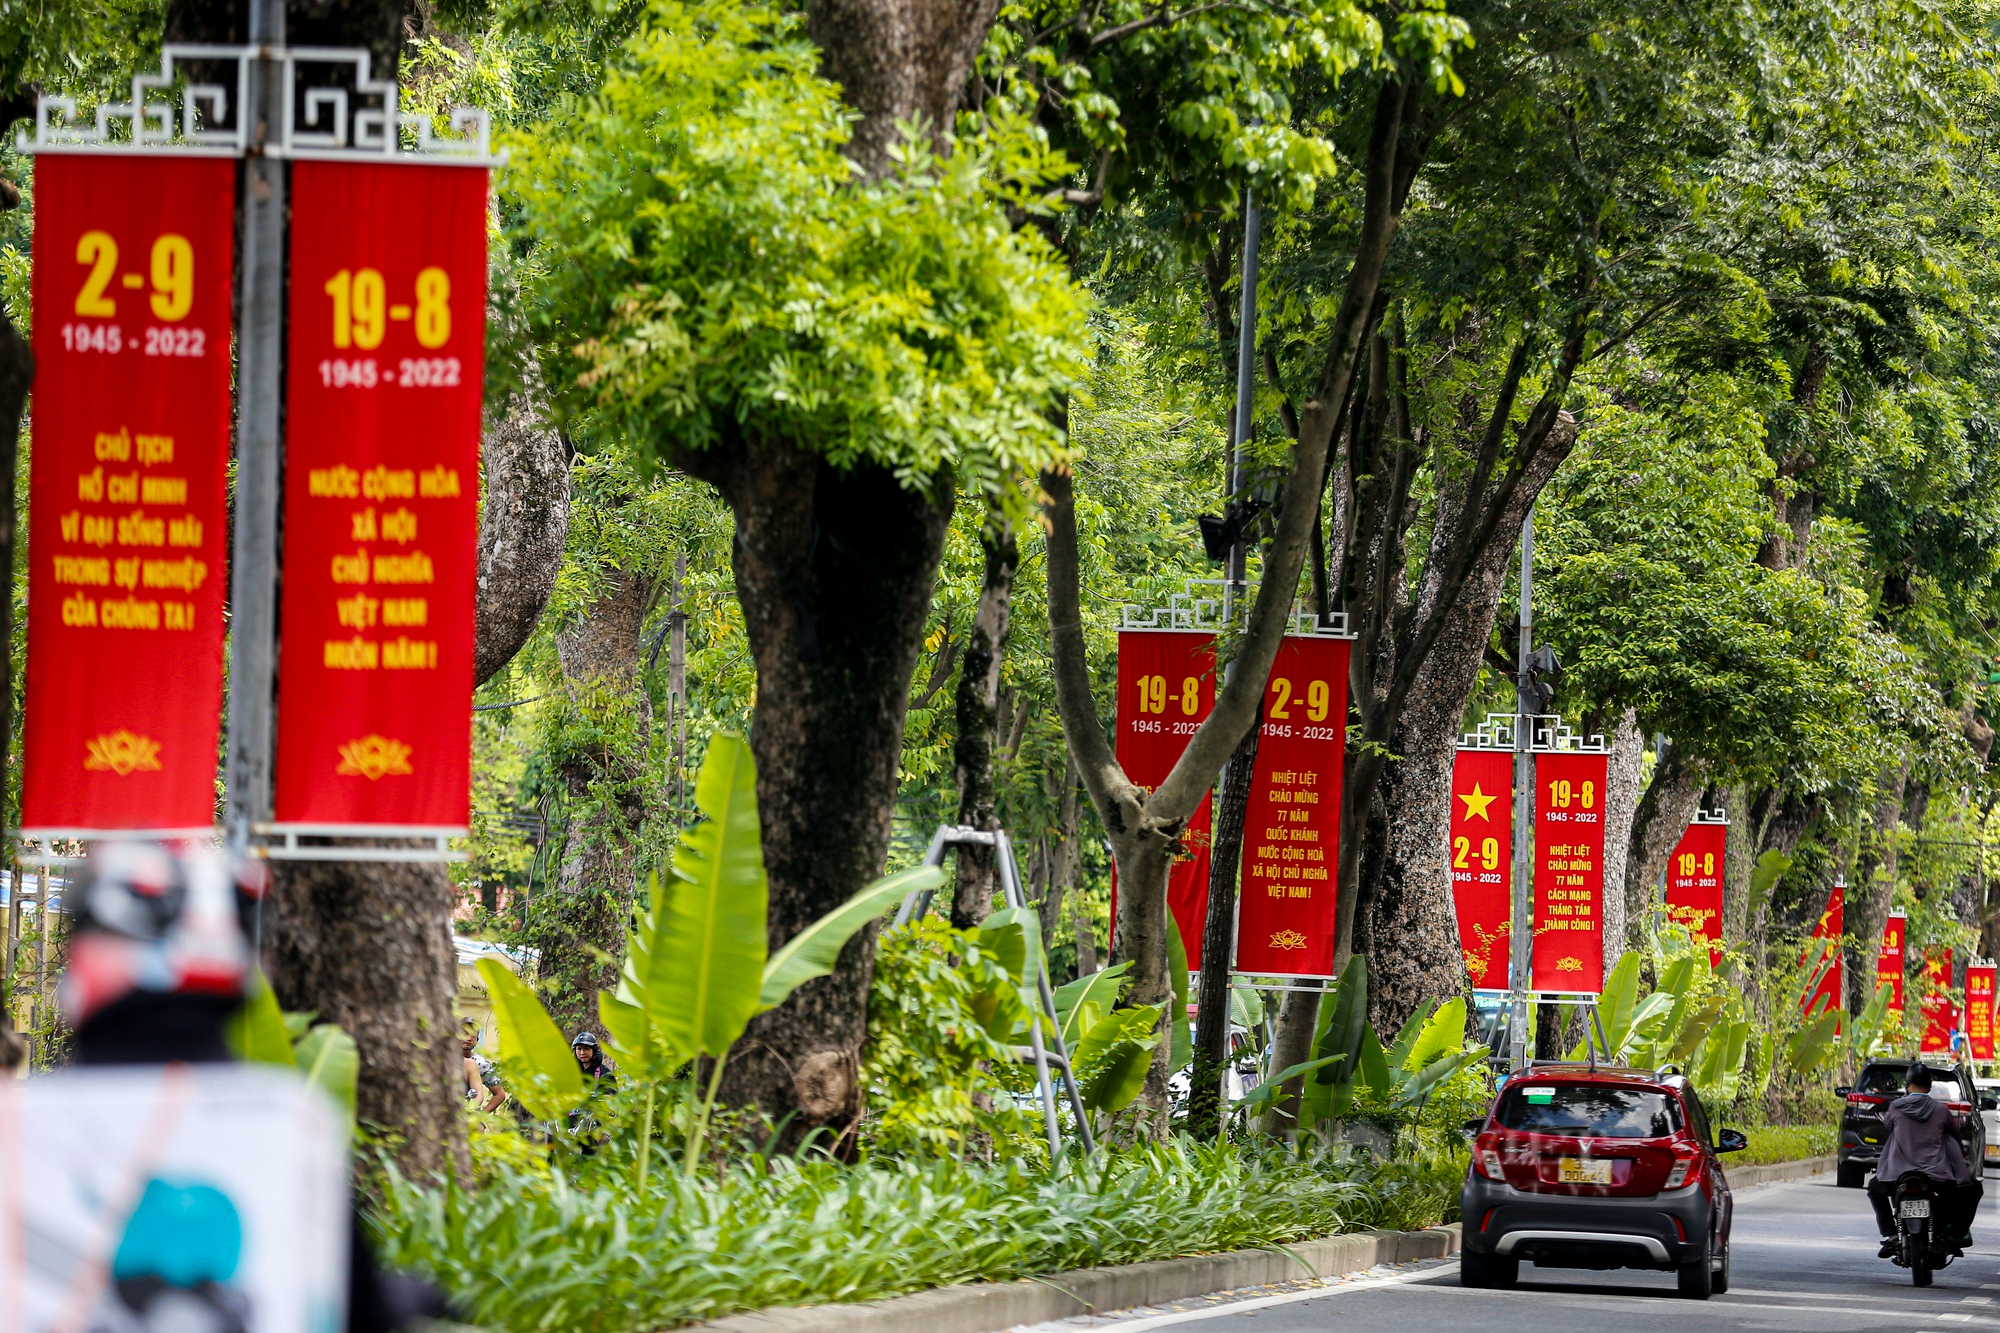 Đường phố Hà Nội rực màu cờ đỏ thắm chào mừng ngày Quốc khánh 2/9 - Ảnh 5.